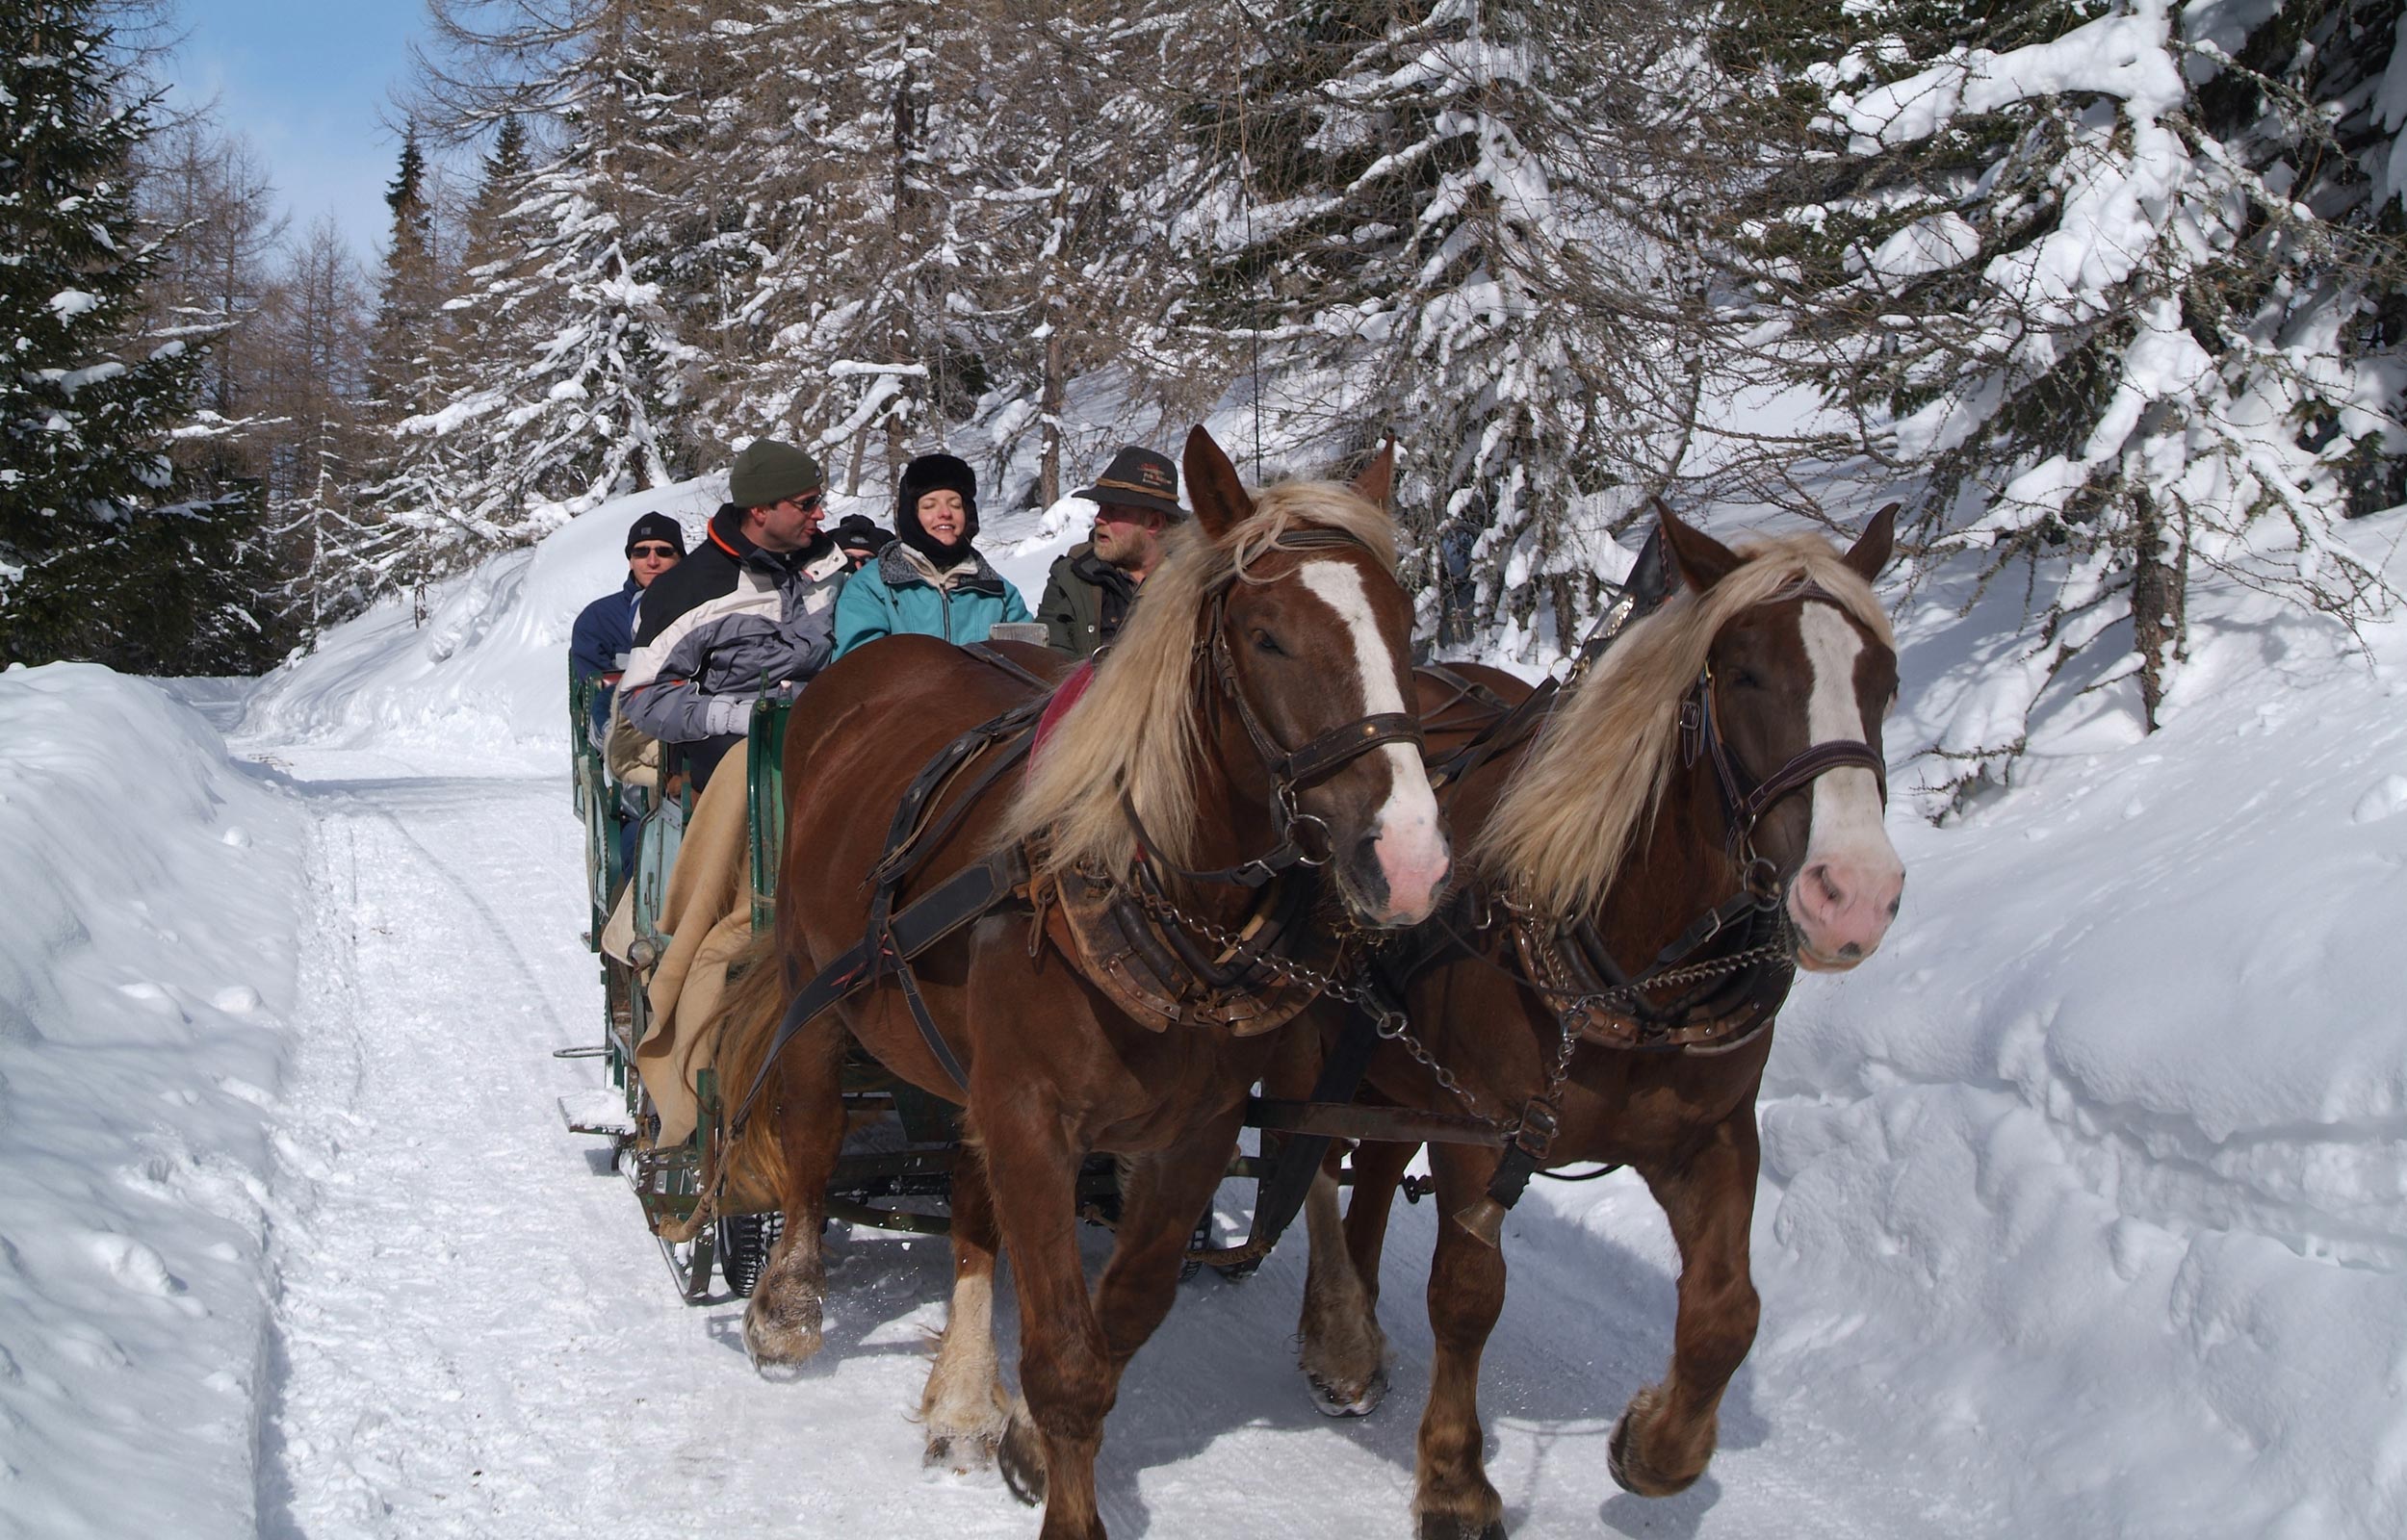 Una carrozza trainata da cavalli percorre un sentiero innevato in un paesaggio invernale.